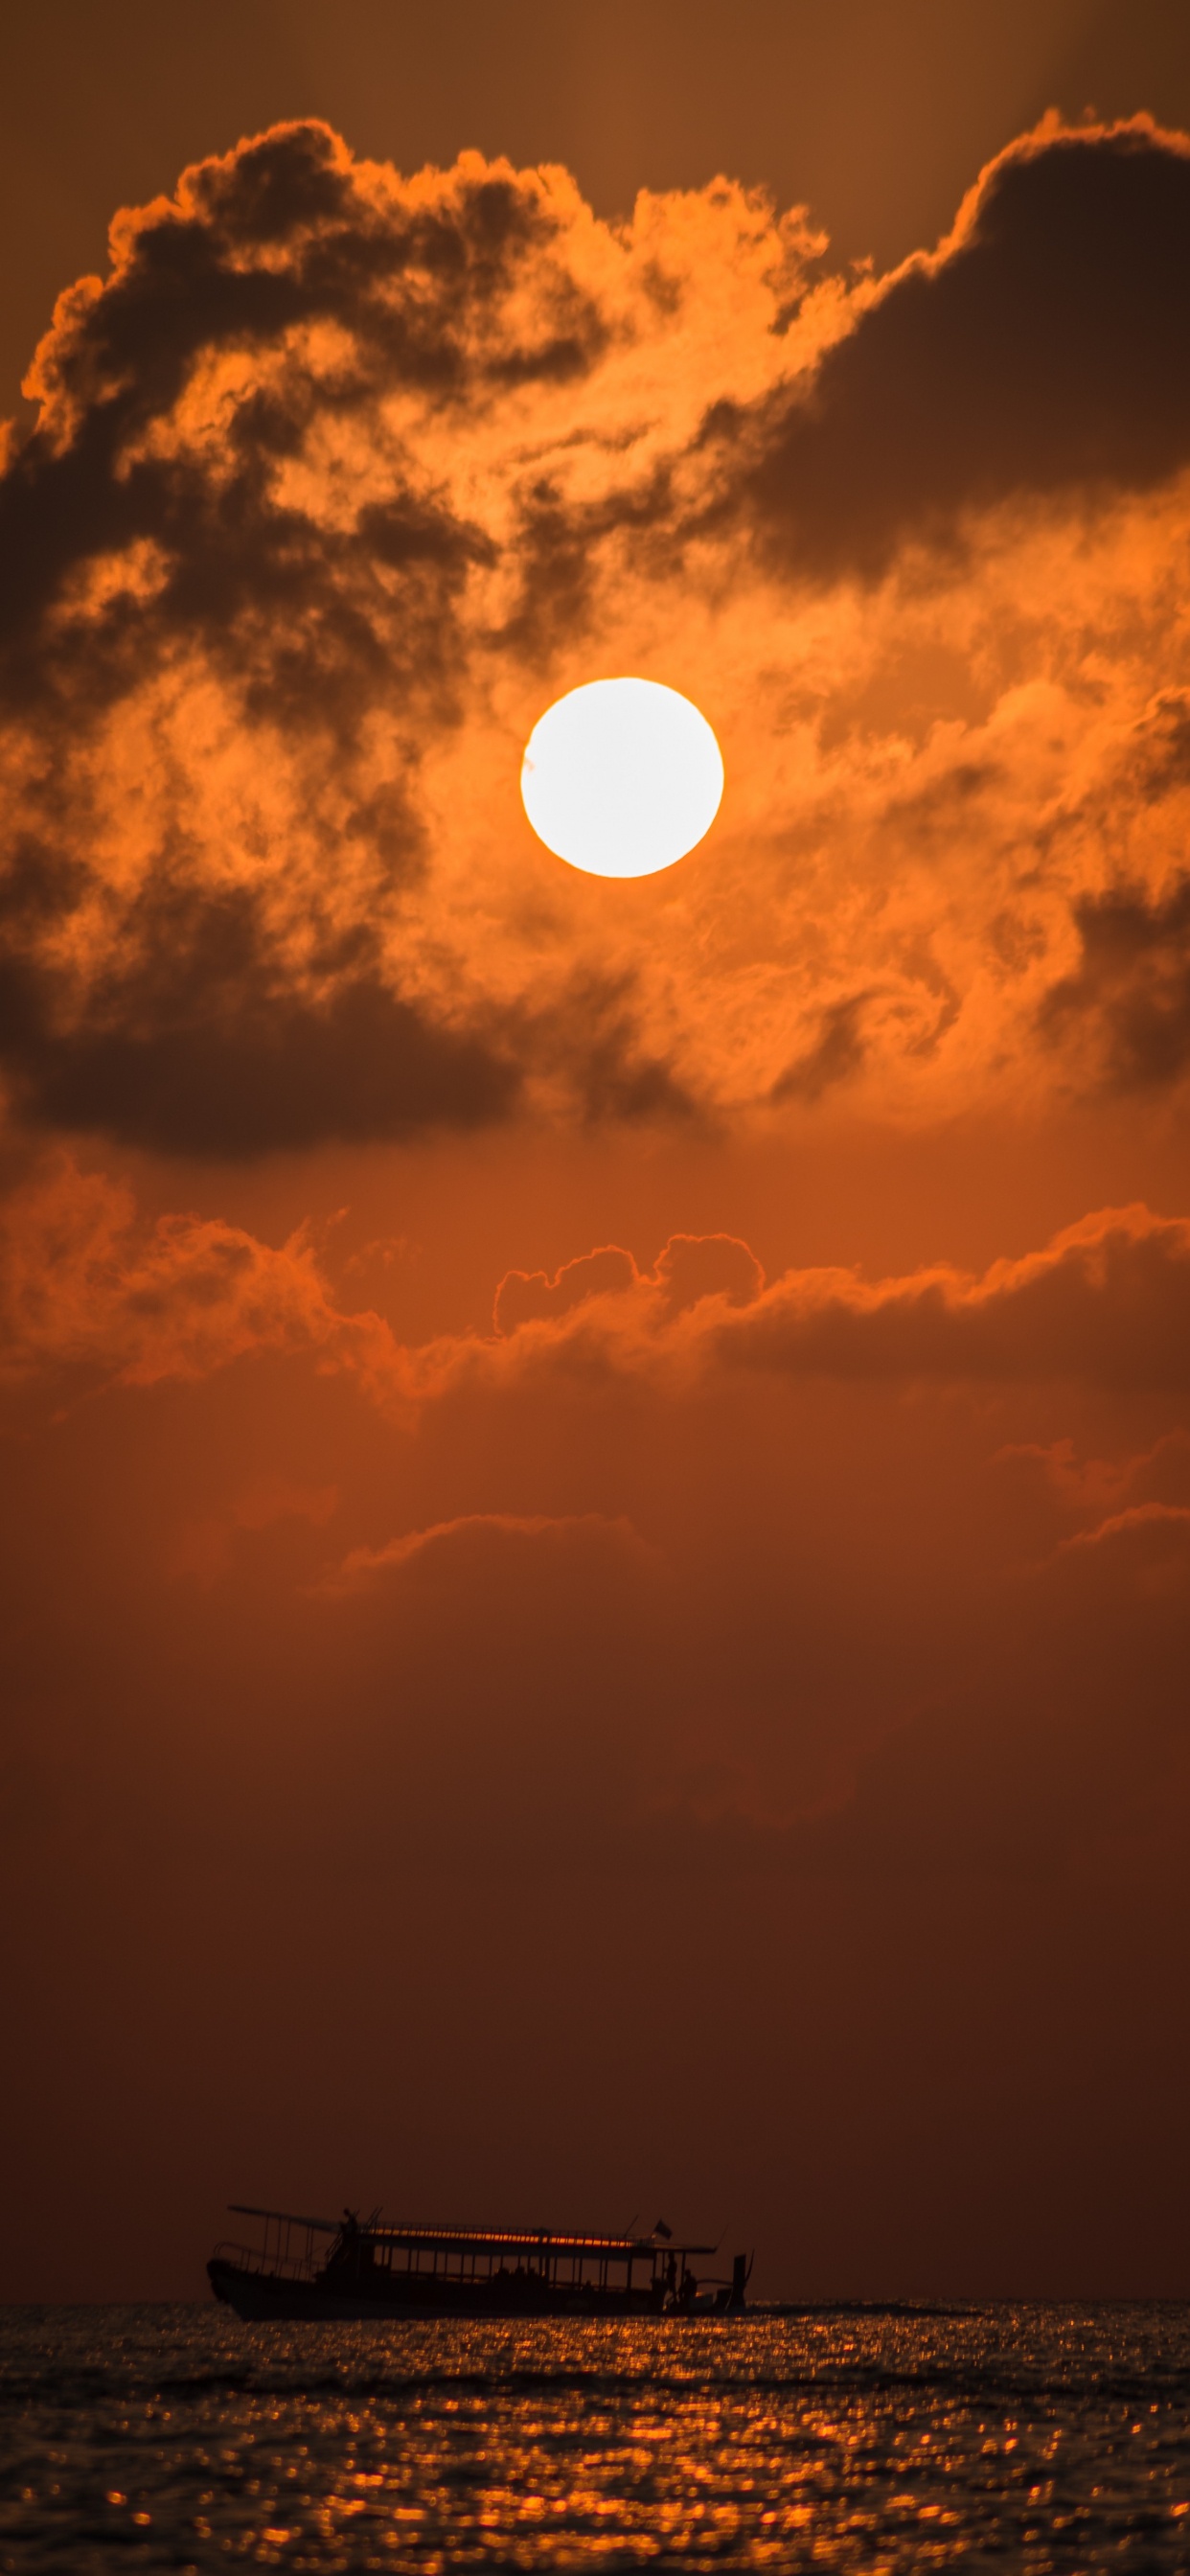 Sunset, Afterglow, Sun, Cloud, Dusk. Wallpaper in 1242x2688 Resolution